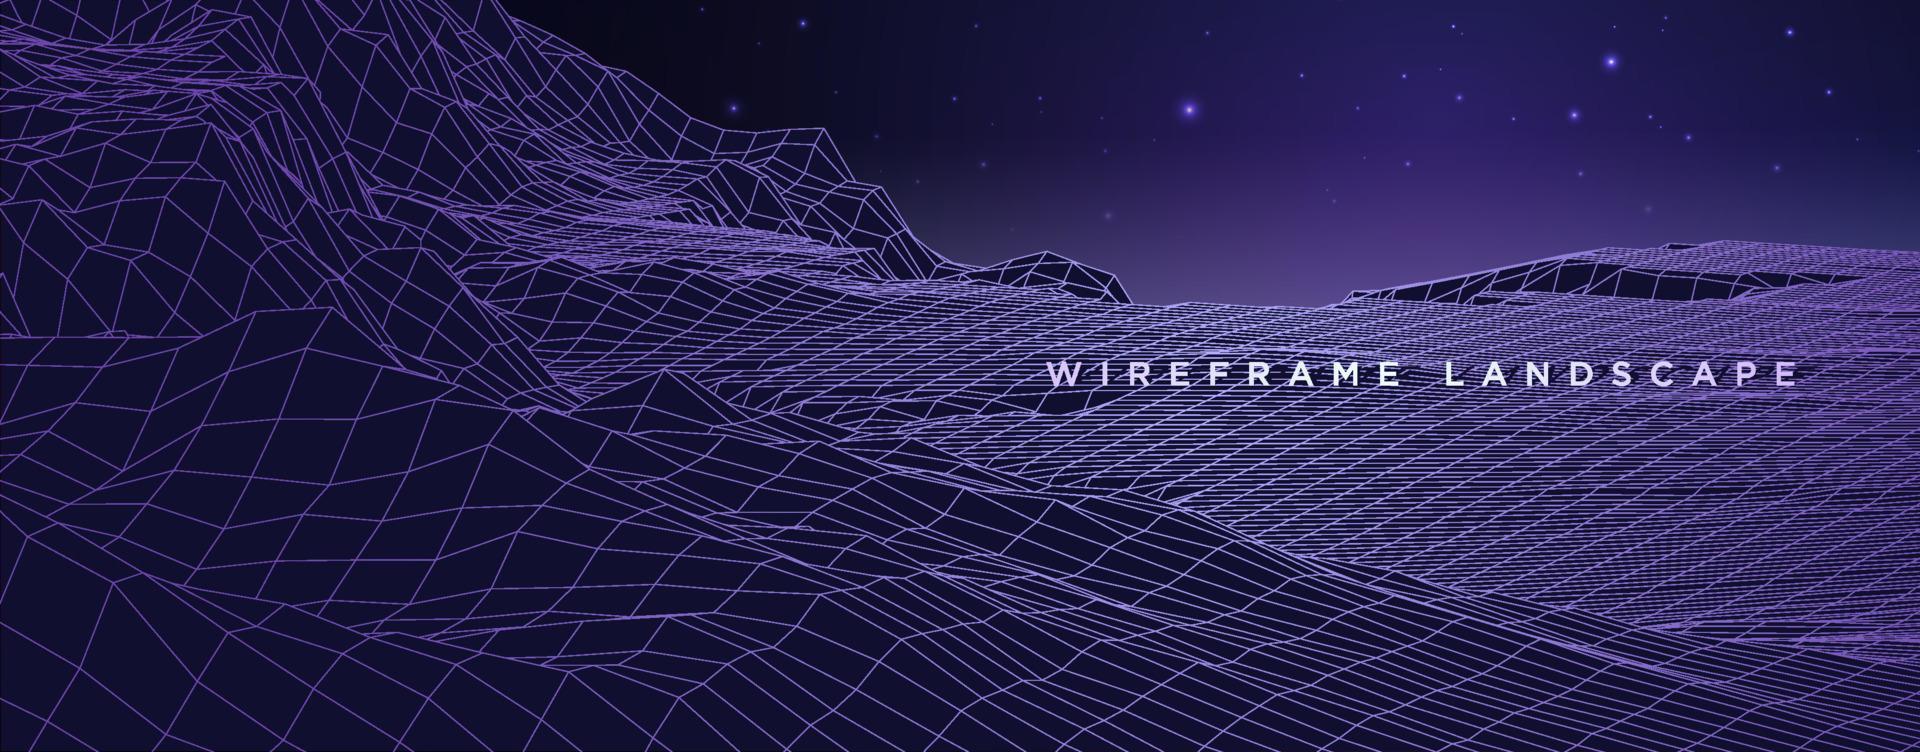 vettore orizzontale wireframe. illustrazione futuristica del fondo della montagna del terreno della griglia di poli basso digitale 3d